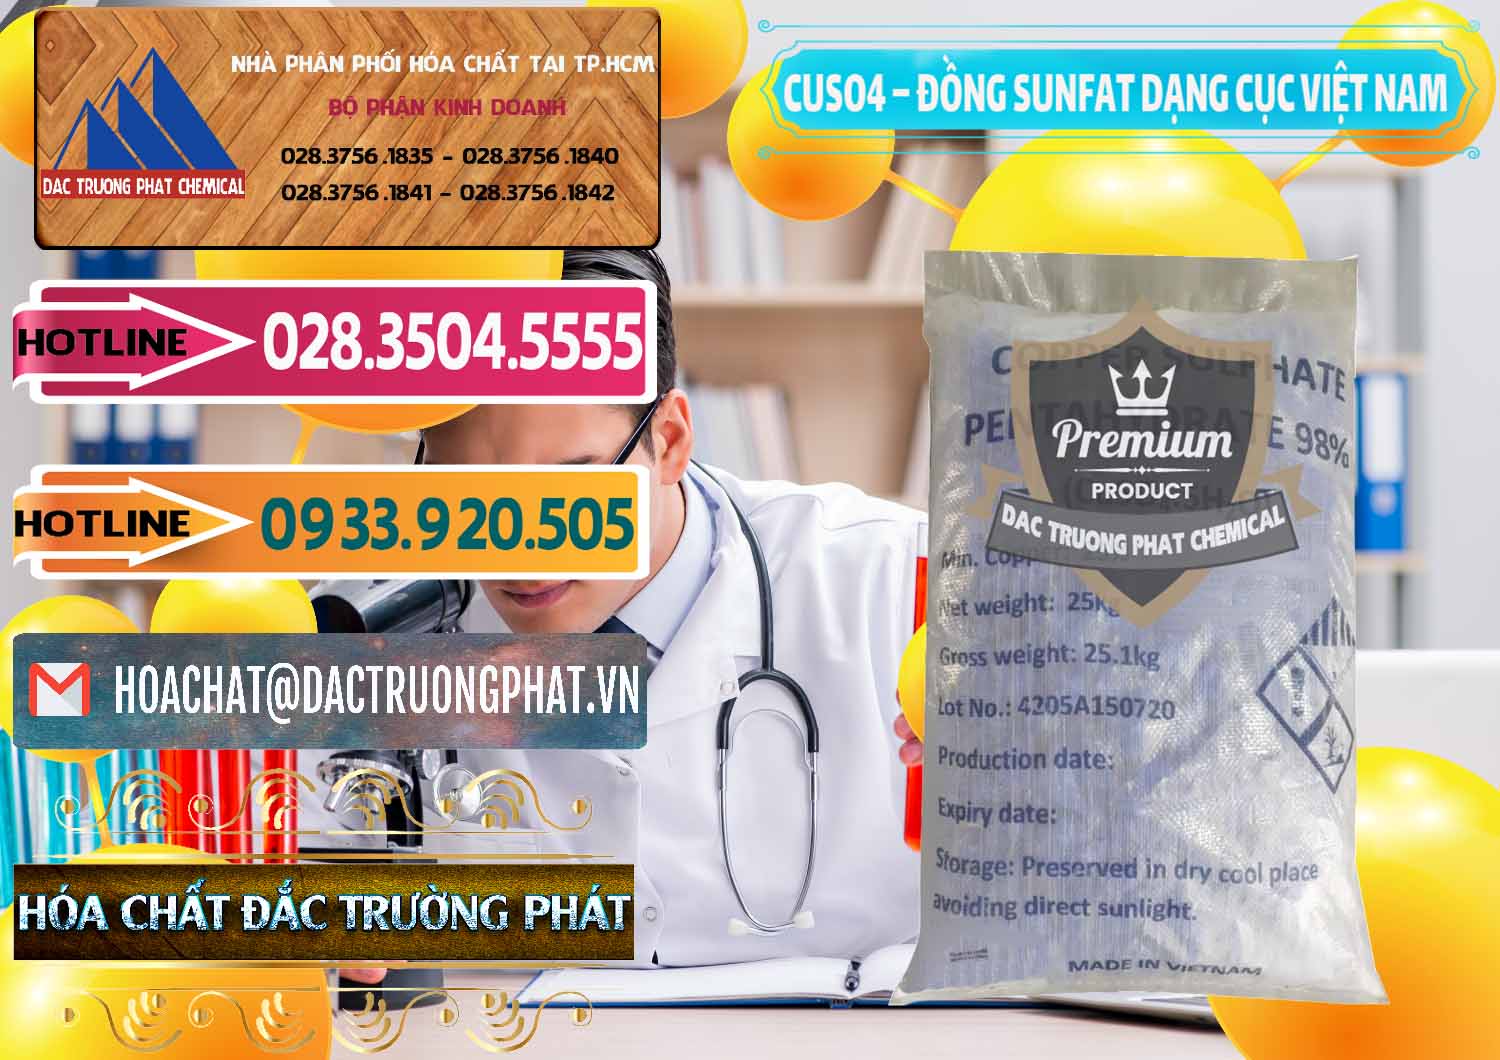 Đơn vị chuyên kinh doanh và cung cấp CUSO4 – Đồng Sunfat Dạng Cục Việt Nam - 0303 - Nơi chuyên bán và cung cấp hóa chất tại TP.HCM - dactruongphat.vn